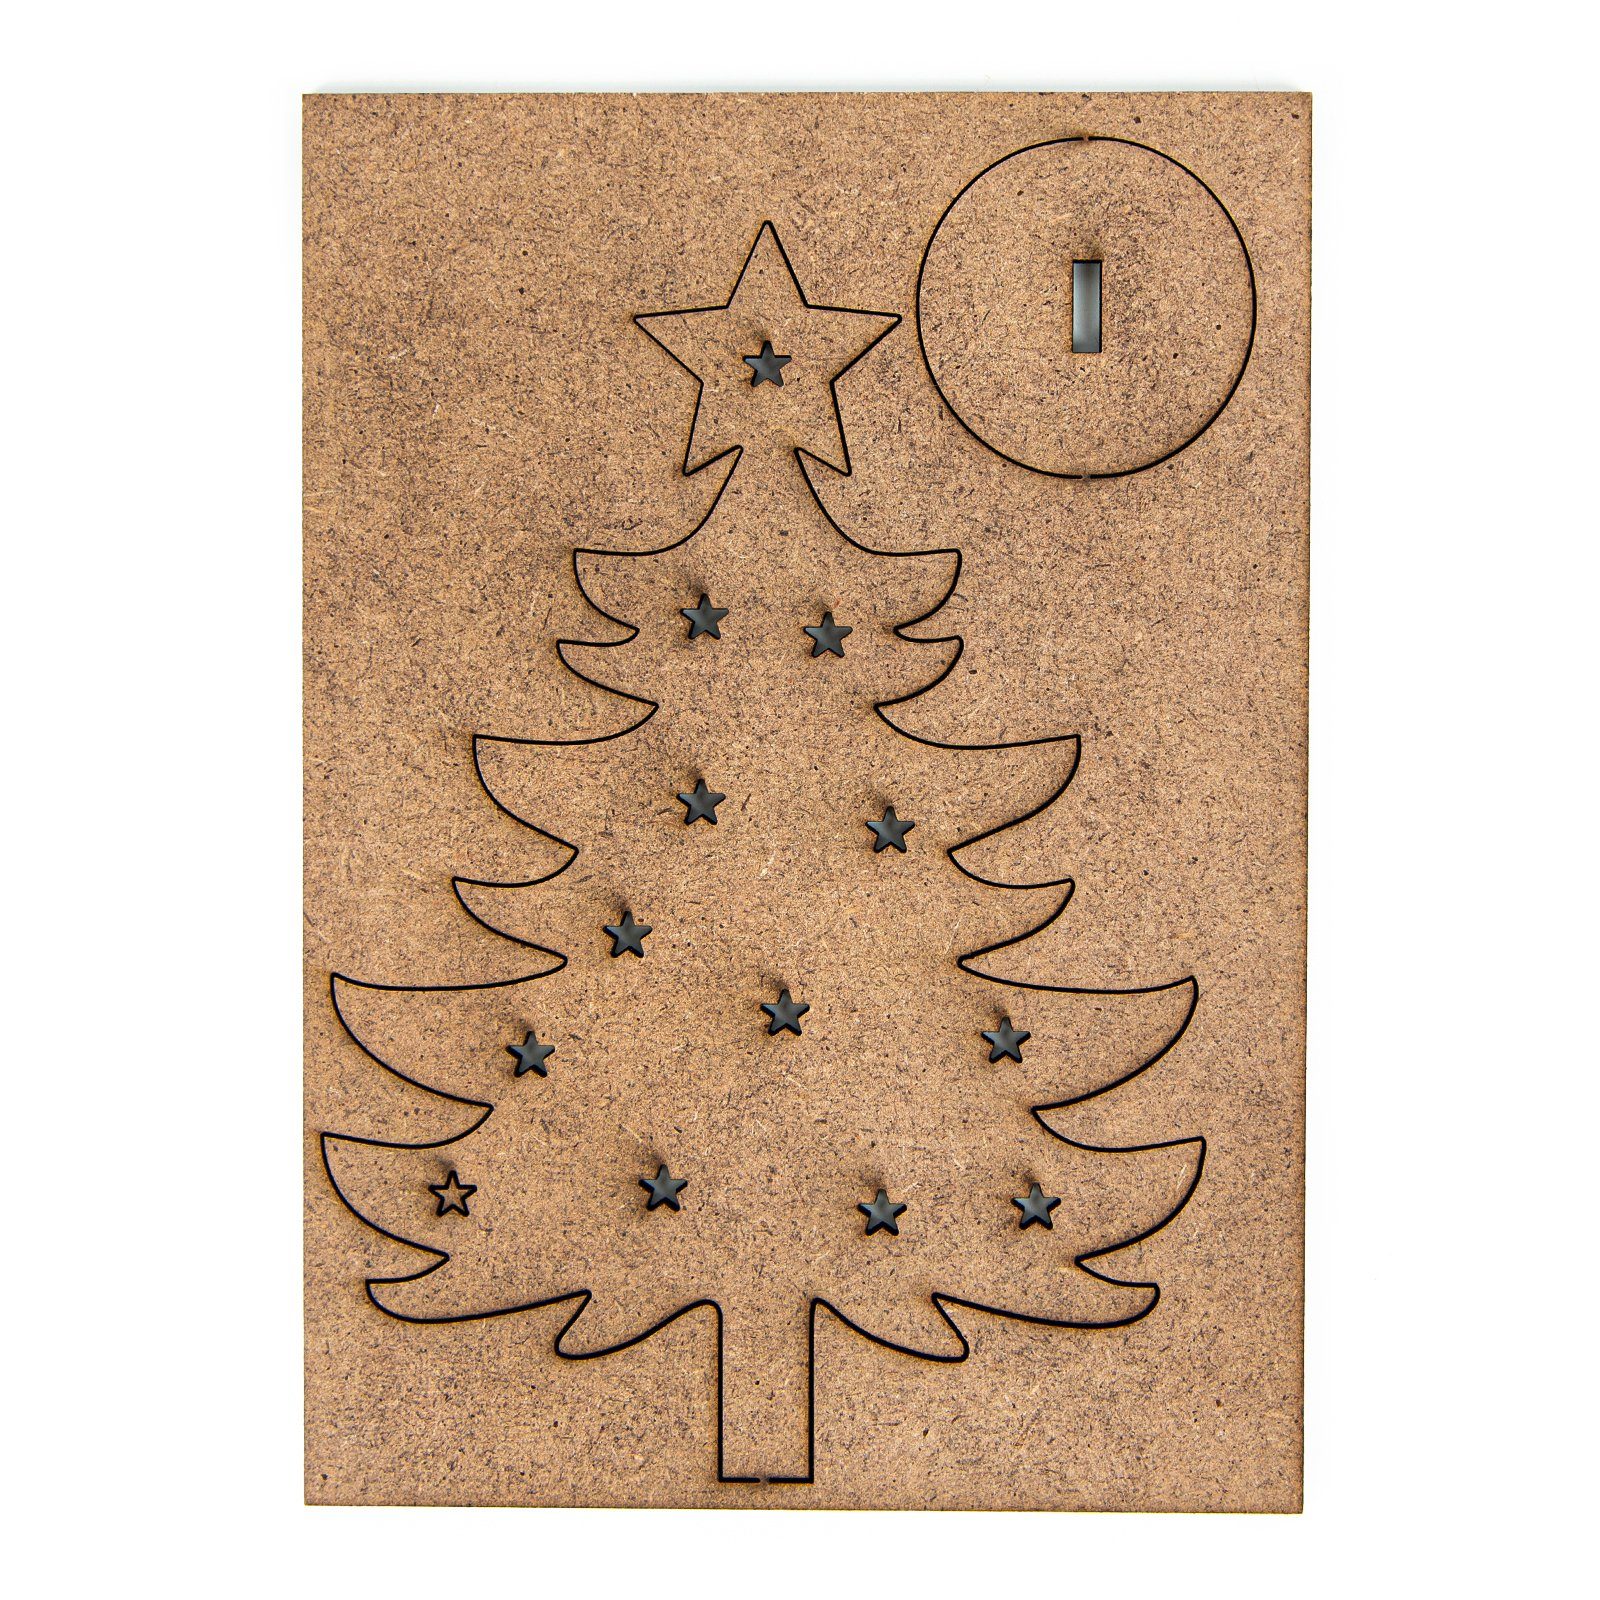 aus Baum Stecken (9 Logbuch-Verlag flacher Holz St) Weihnachtsfigur Weihnachtsbäume zum